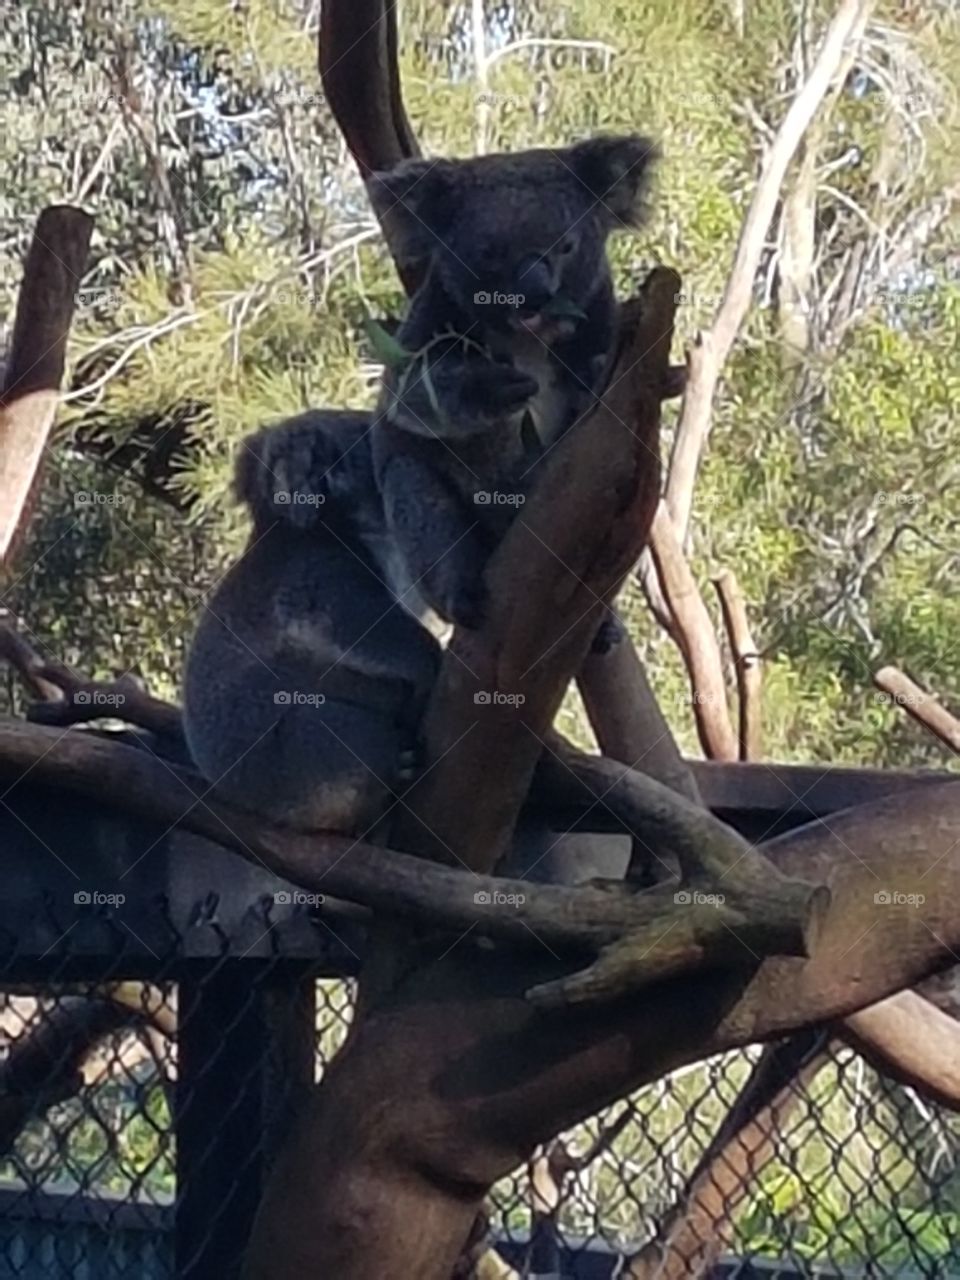 Koala's having a Chill :)